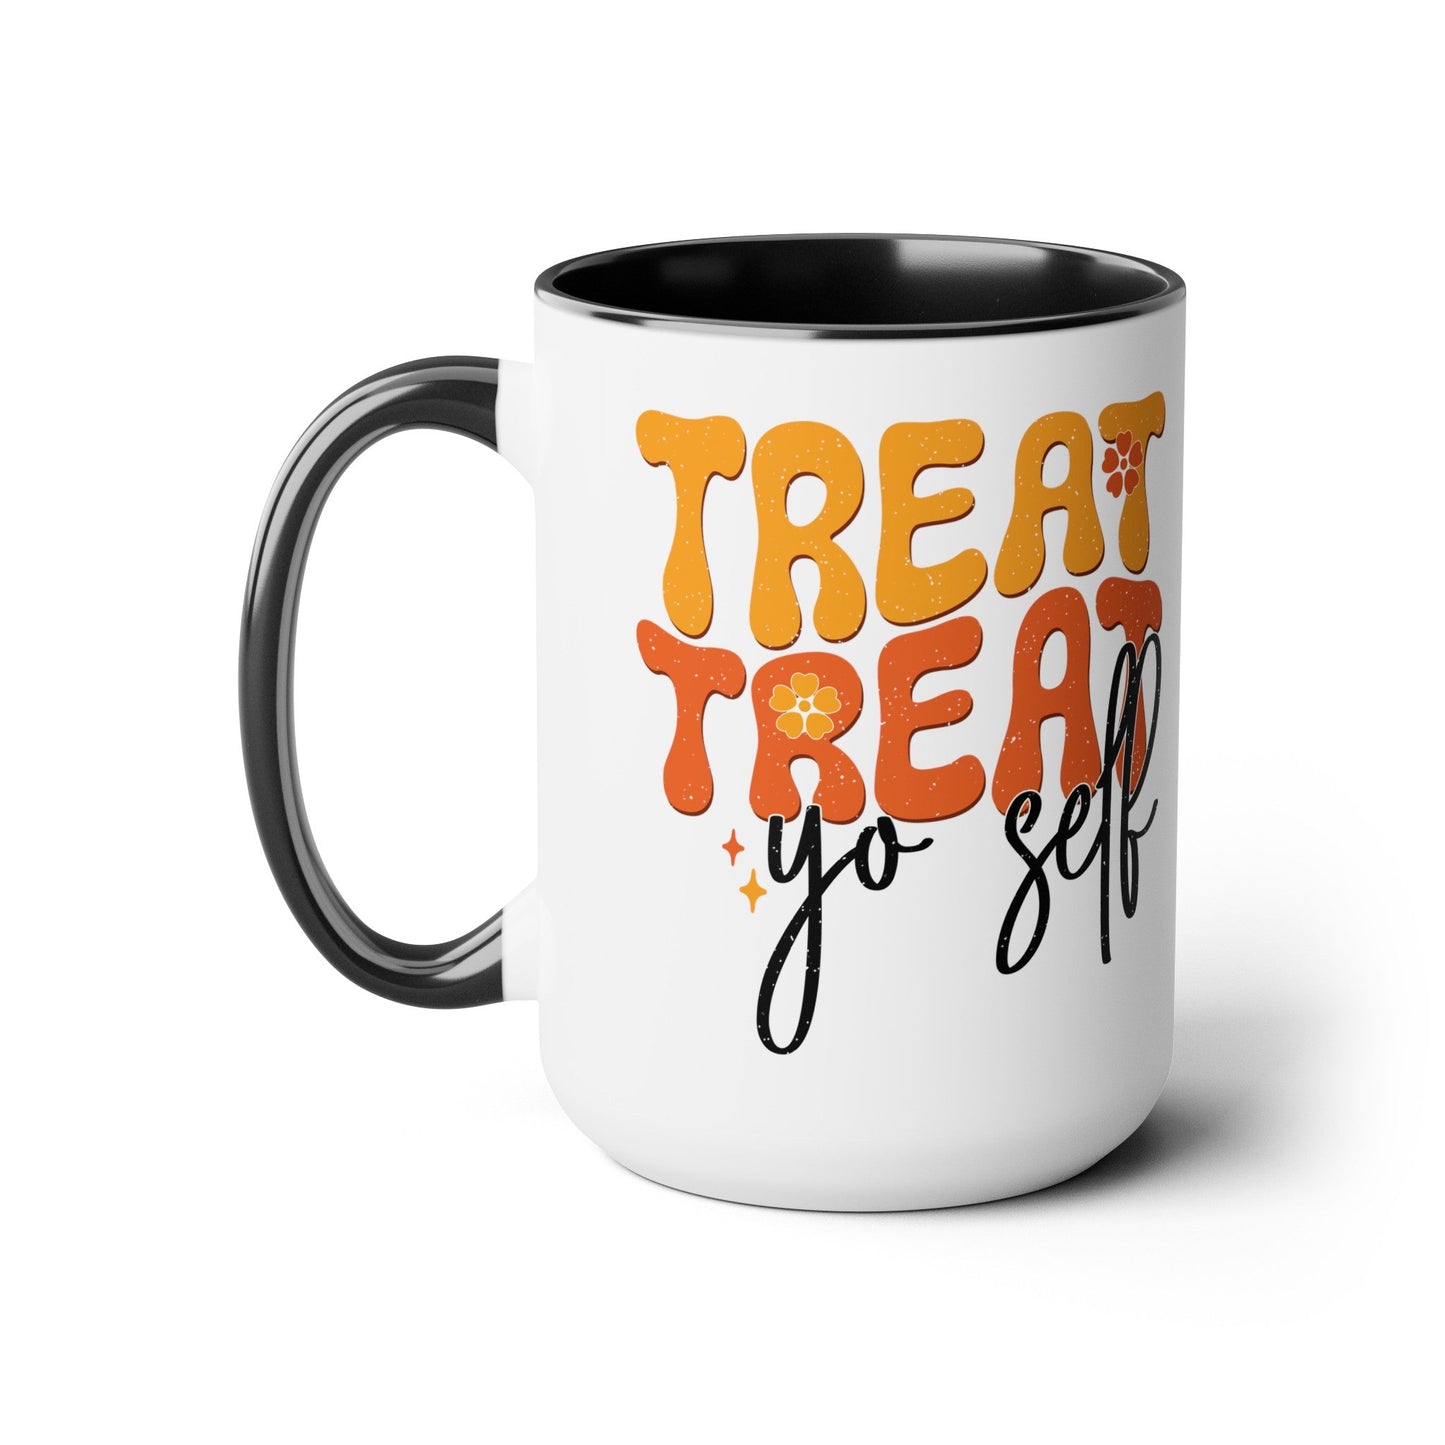 Treat Treat Yo Self - Two-Tone Coffee Mugs, 15oz